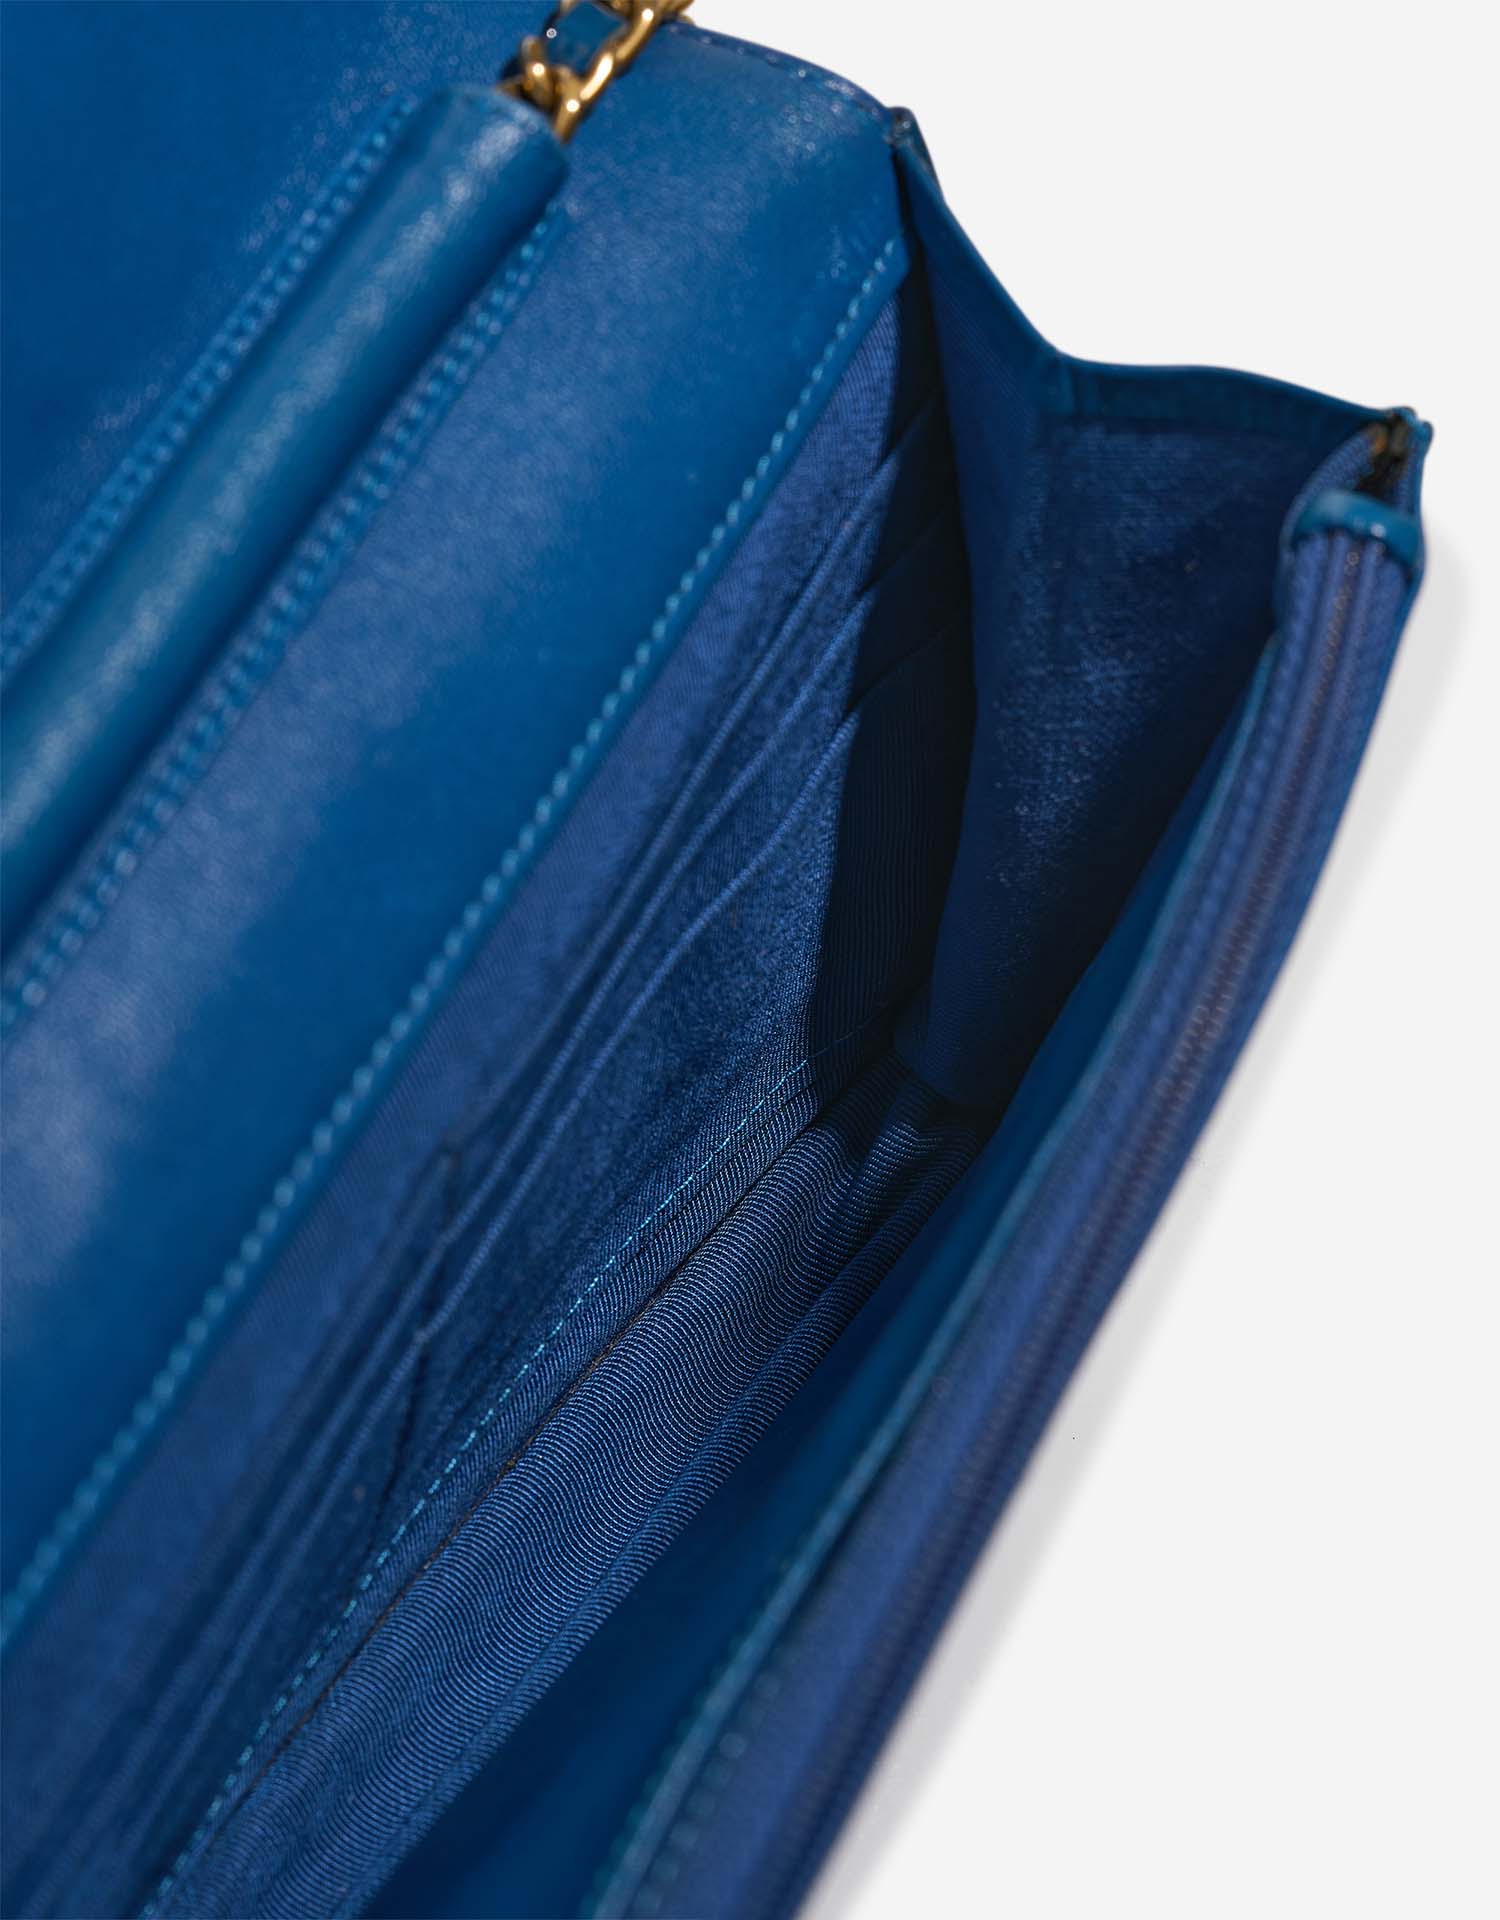 Chanel 255 WOC Blue Inside | Verkaufen Sie Ihre Designer-Tasche auf Saclab.com